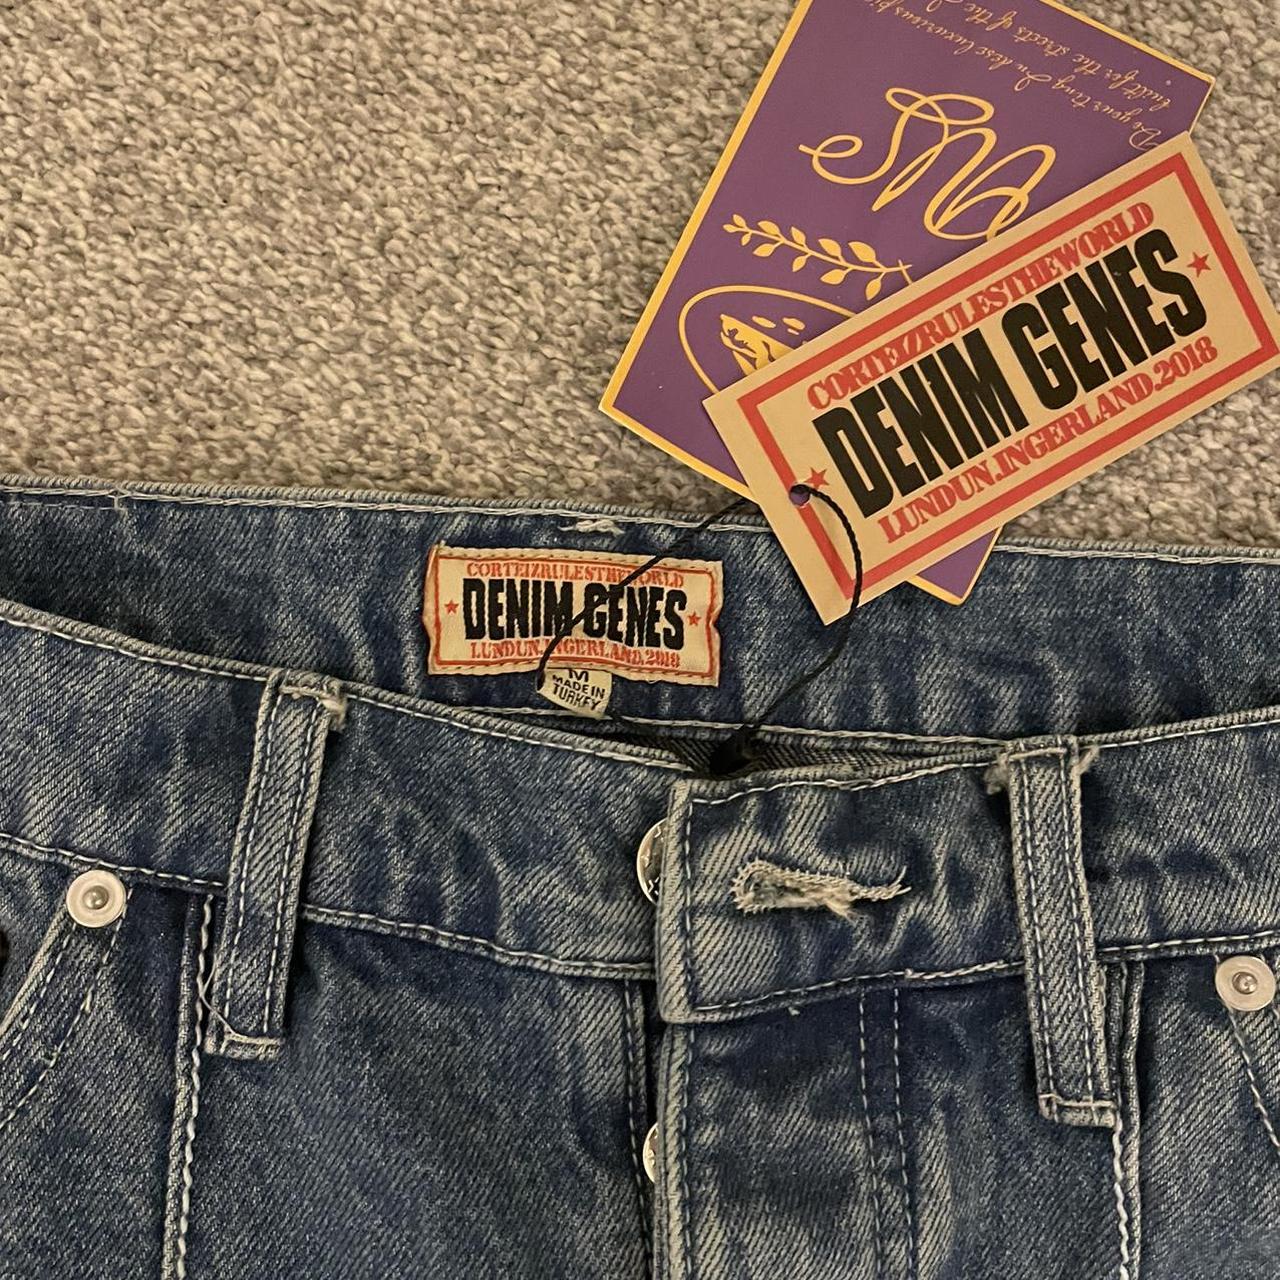 Blue denim crtz jeans Size M Baggy fit Brand new - Depop